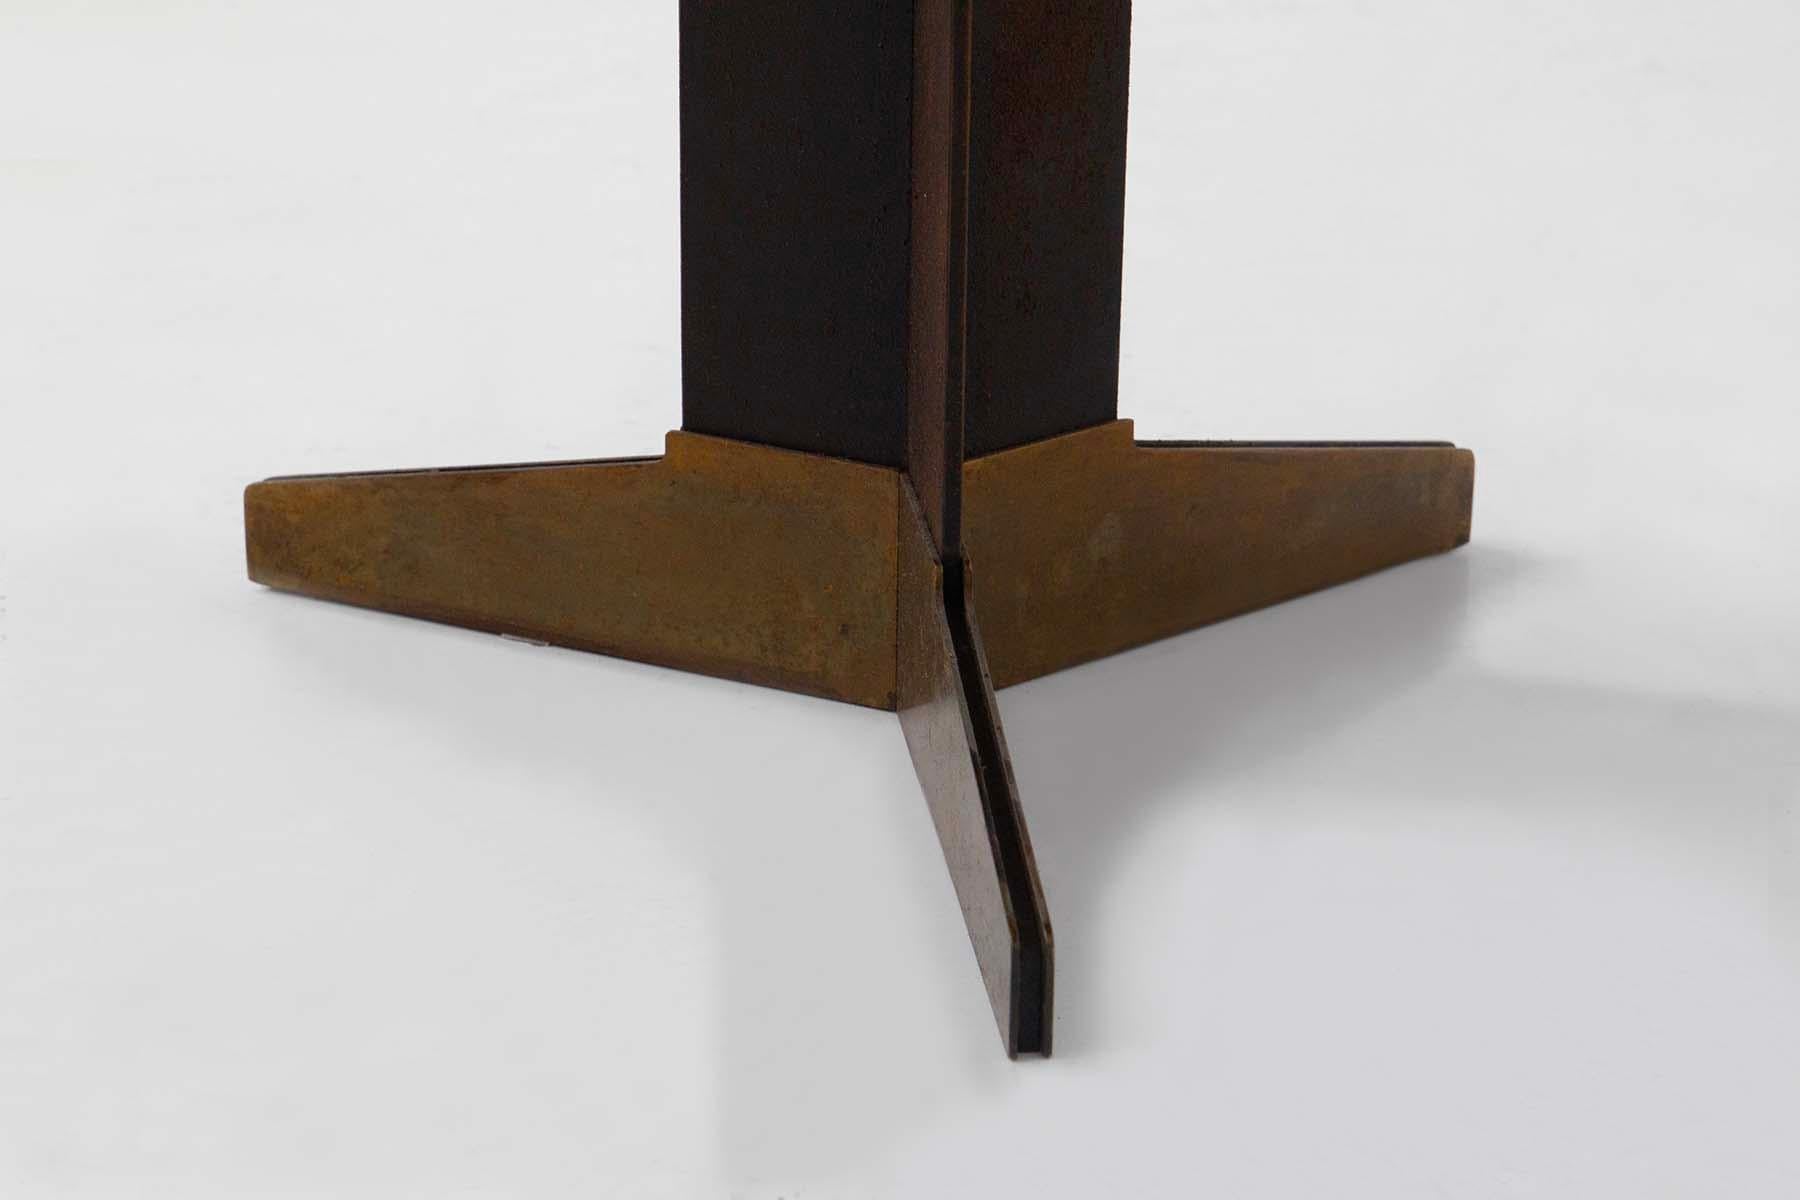 
Une table d'appoint italienne élégante et moderniste des années 1950-60, conçue par le visionnaire Ignazio Gardella, fait vraiment plaisir à voir. Sa forme ronde, ornée d'un plateau en marbre noir aux veines blanches exquises, est tout simplement